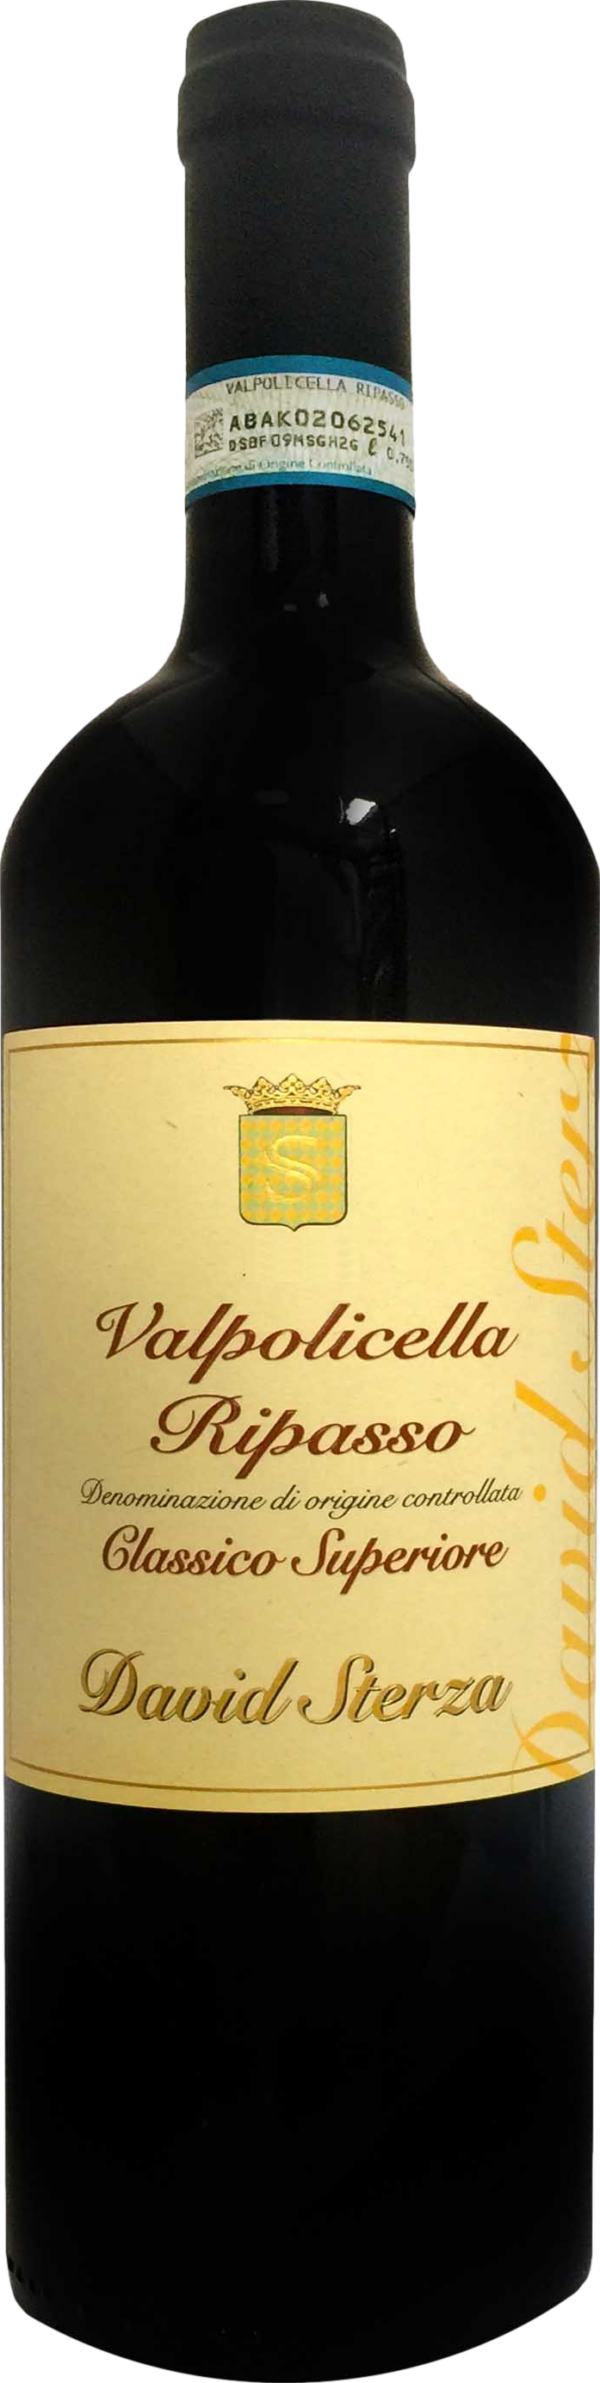 Product image of David Sterza Valpolicella Classico Superiore Ripasso 2021 from 8wines